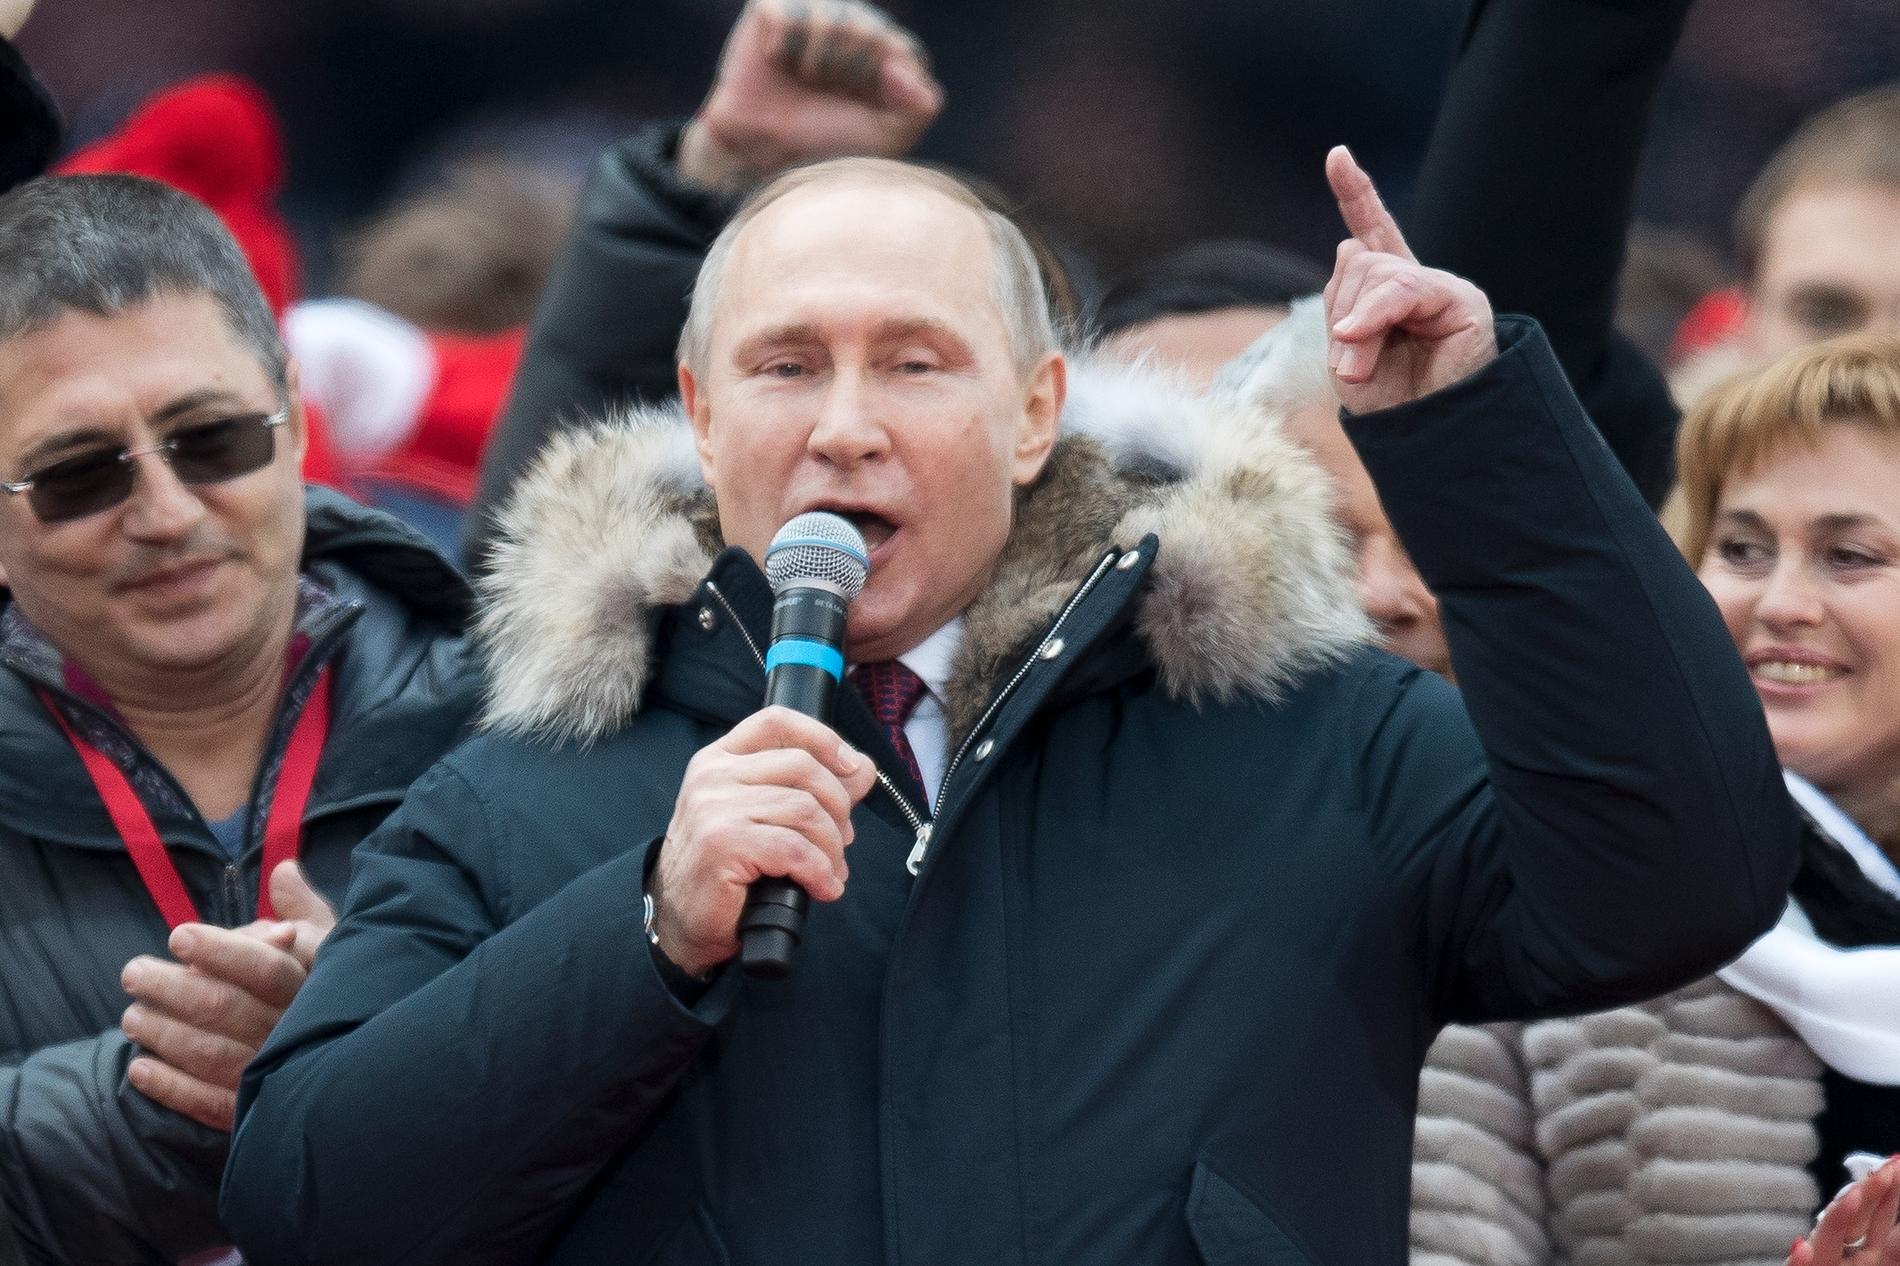 Stadionevenemanget var crescendot på Putins presidentvalskampanj. En välregisserad föreställning inför en köpt och dittvingad publik.